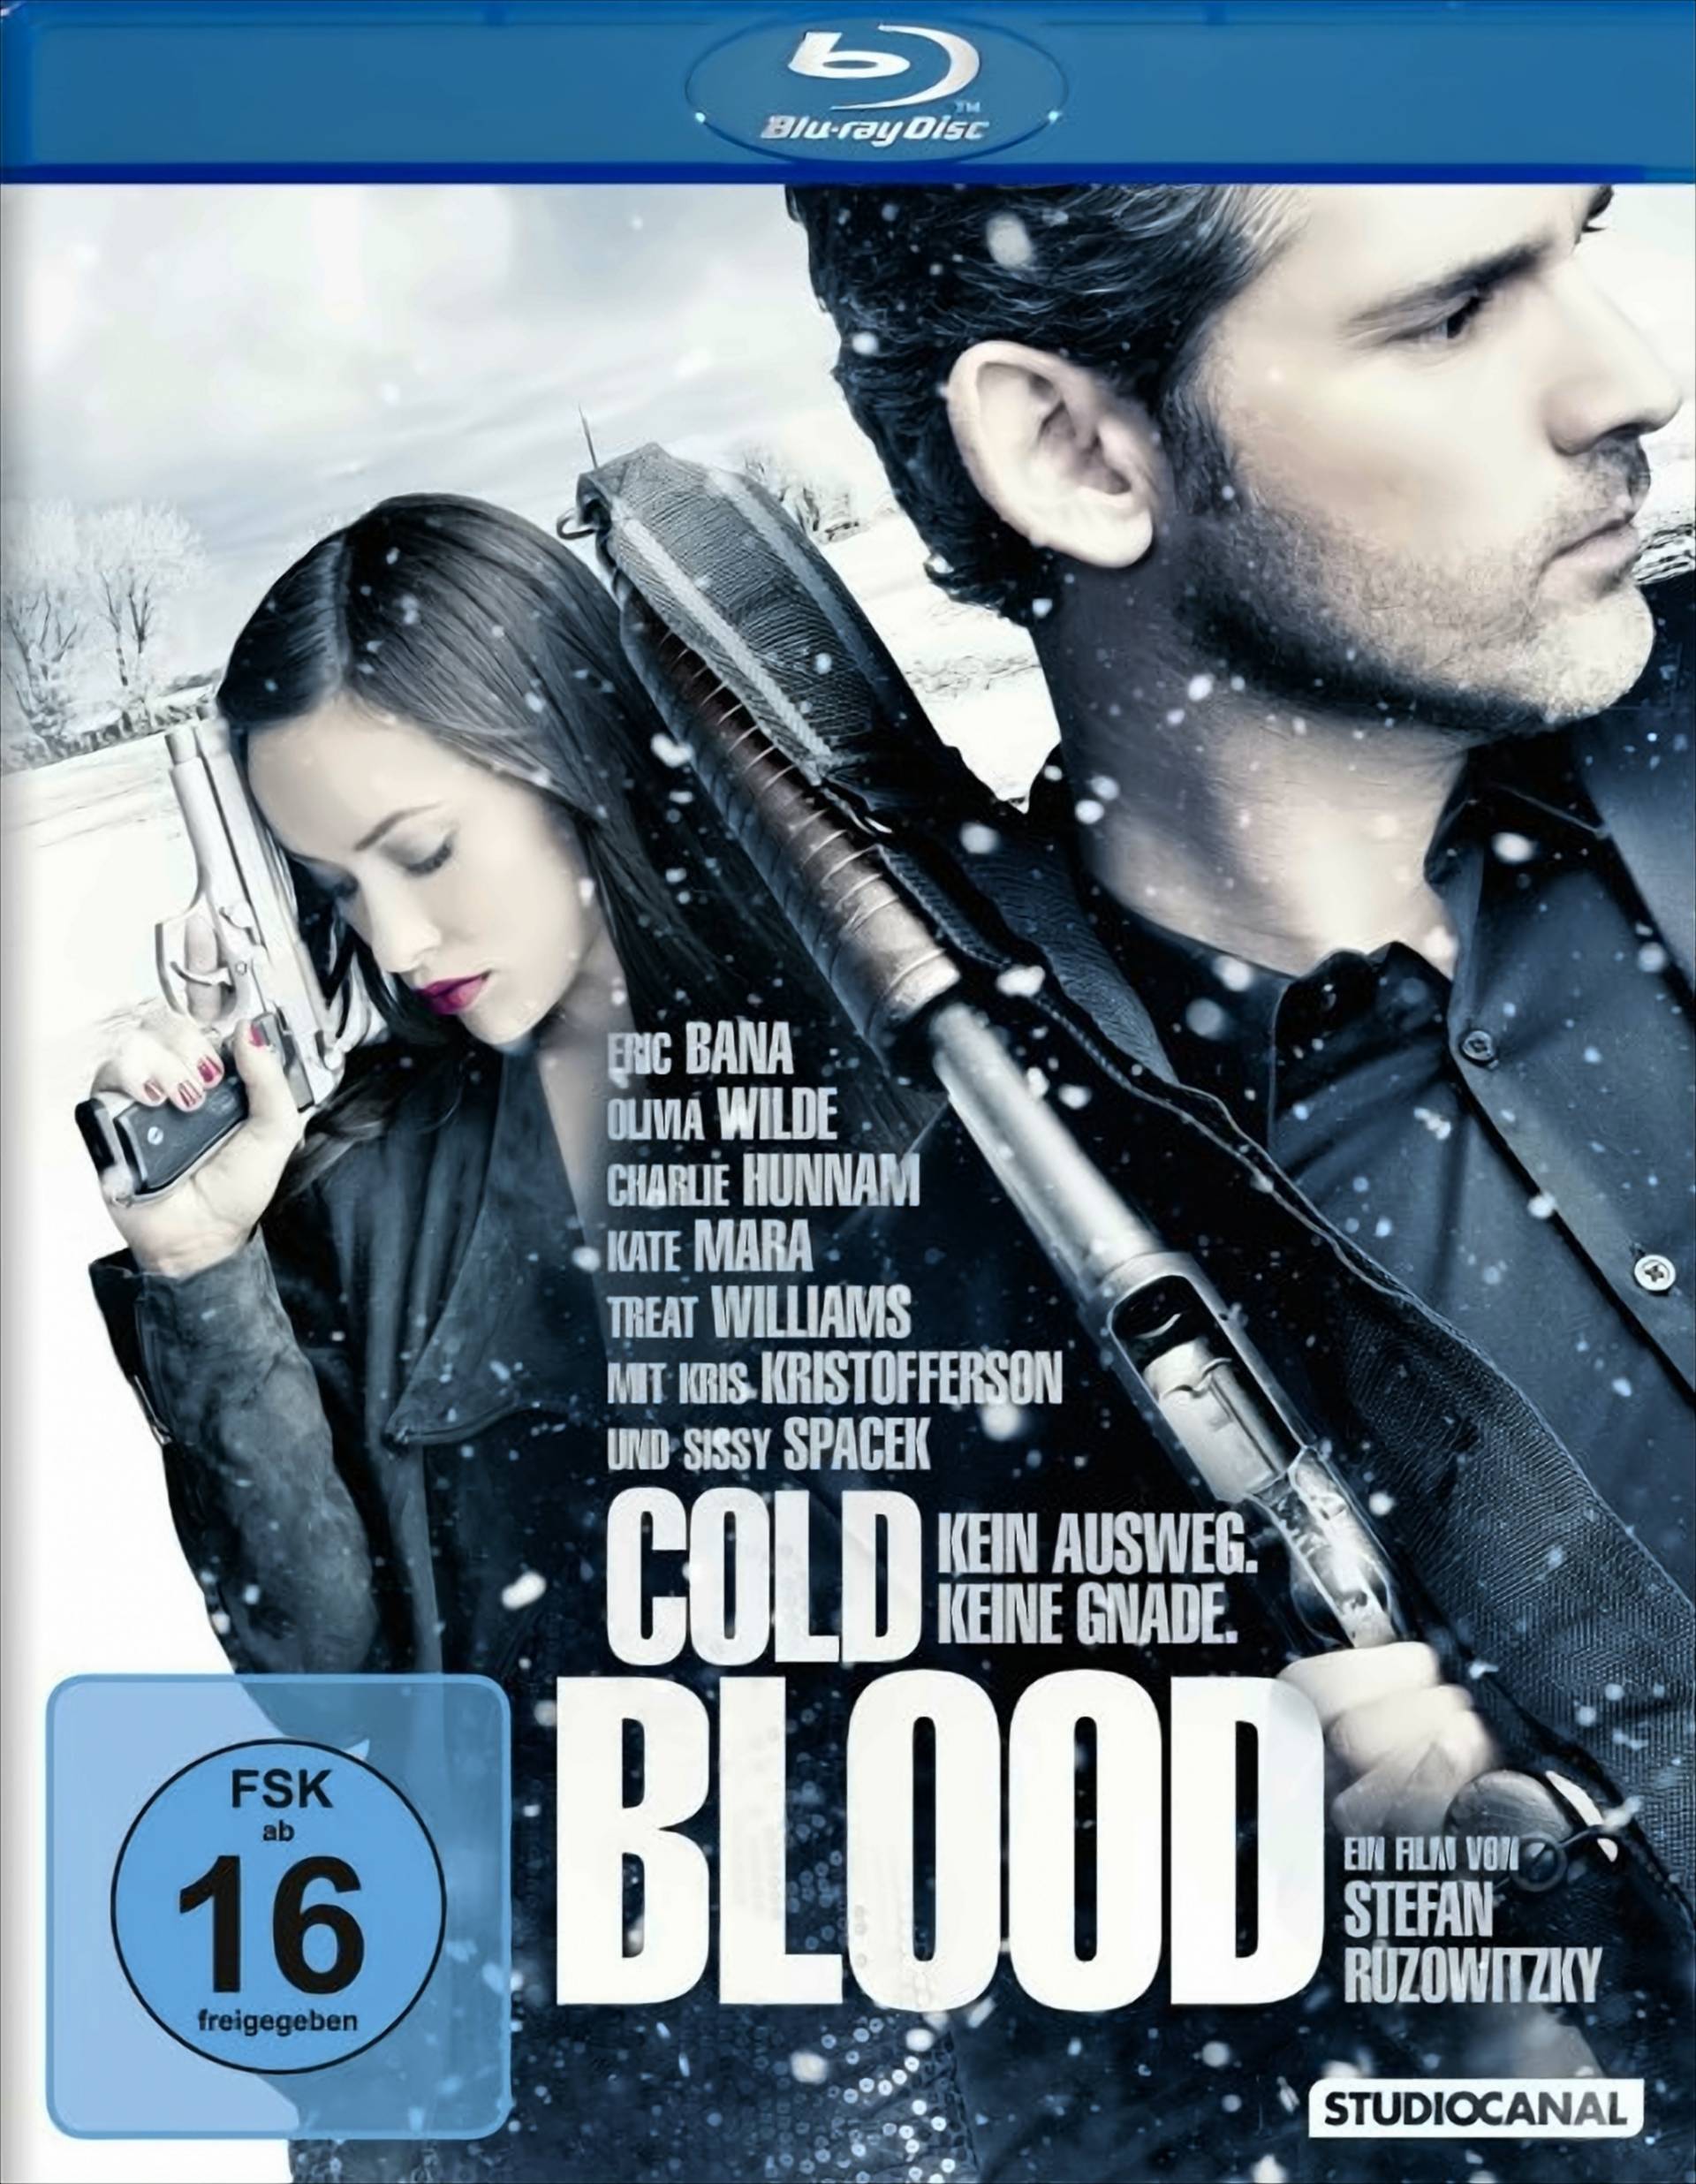 Cold Blood - Kein Ausweg. Keine Gnade von Studiocanal